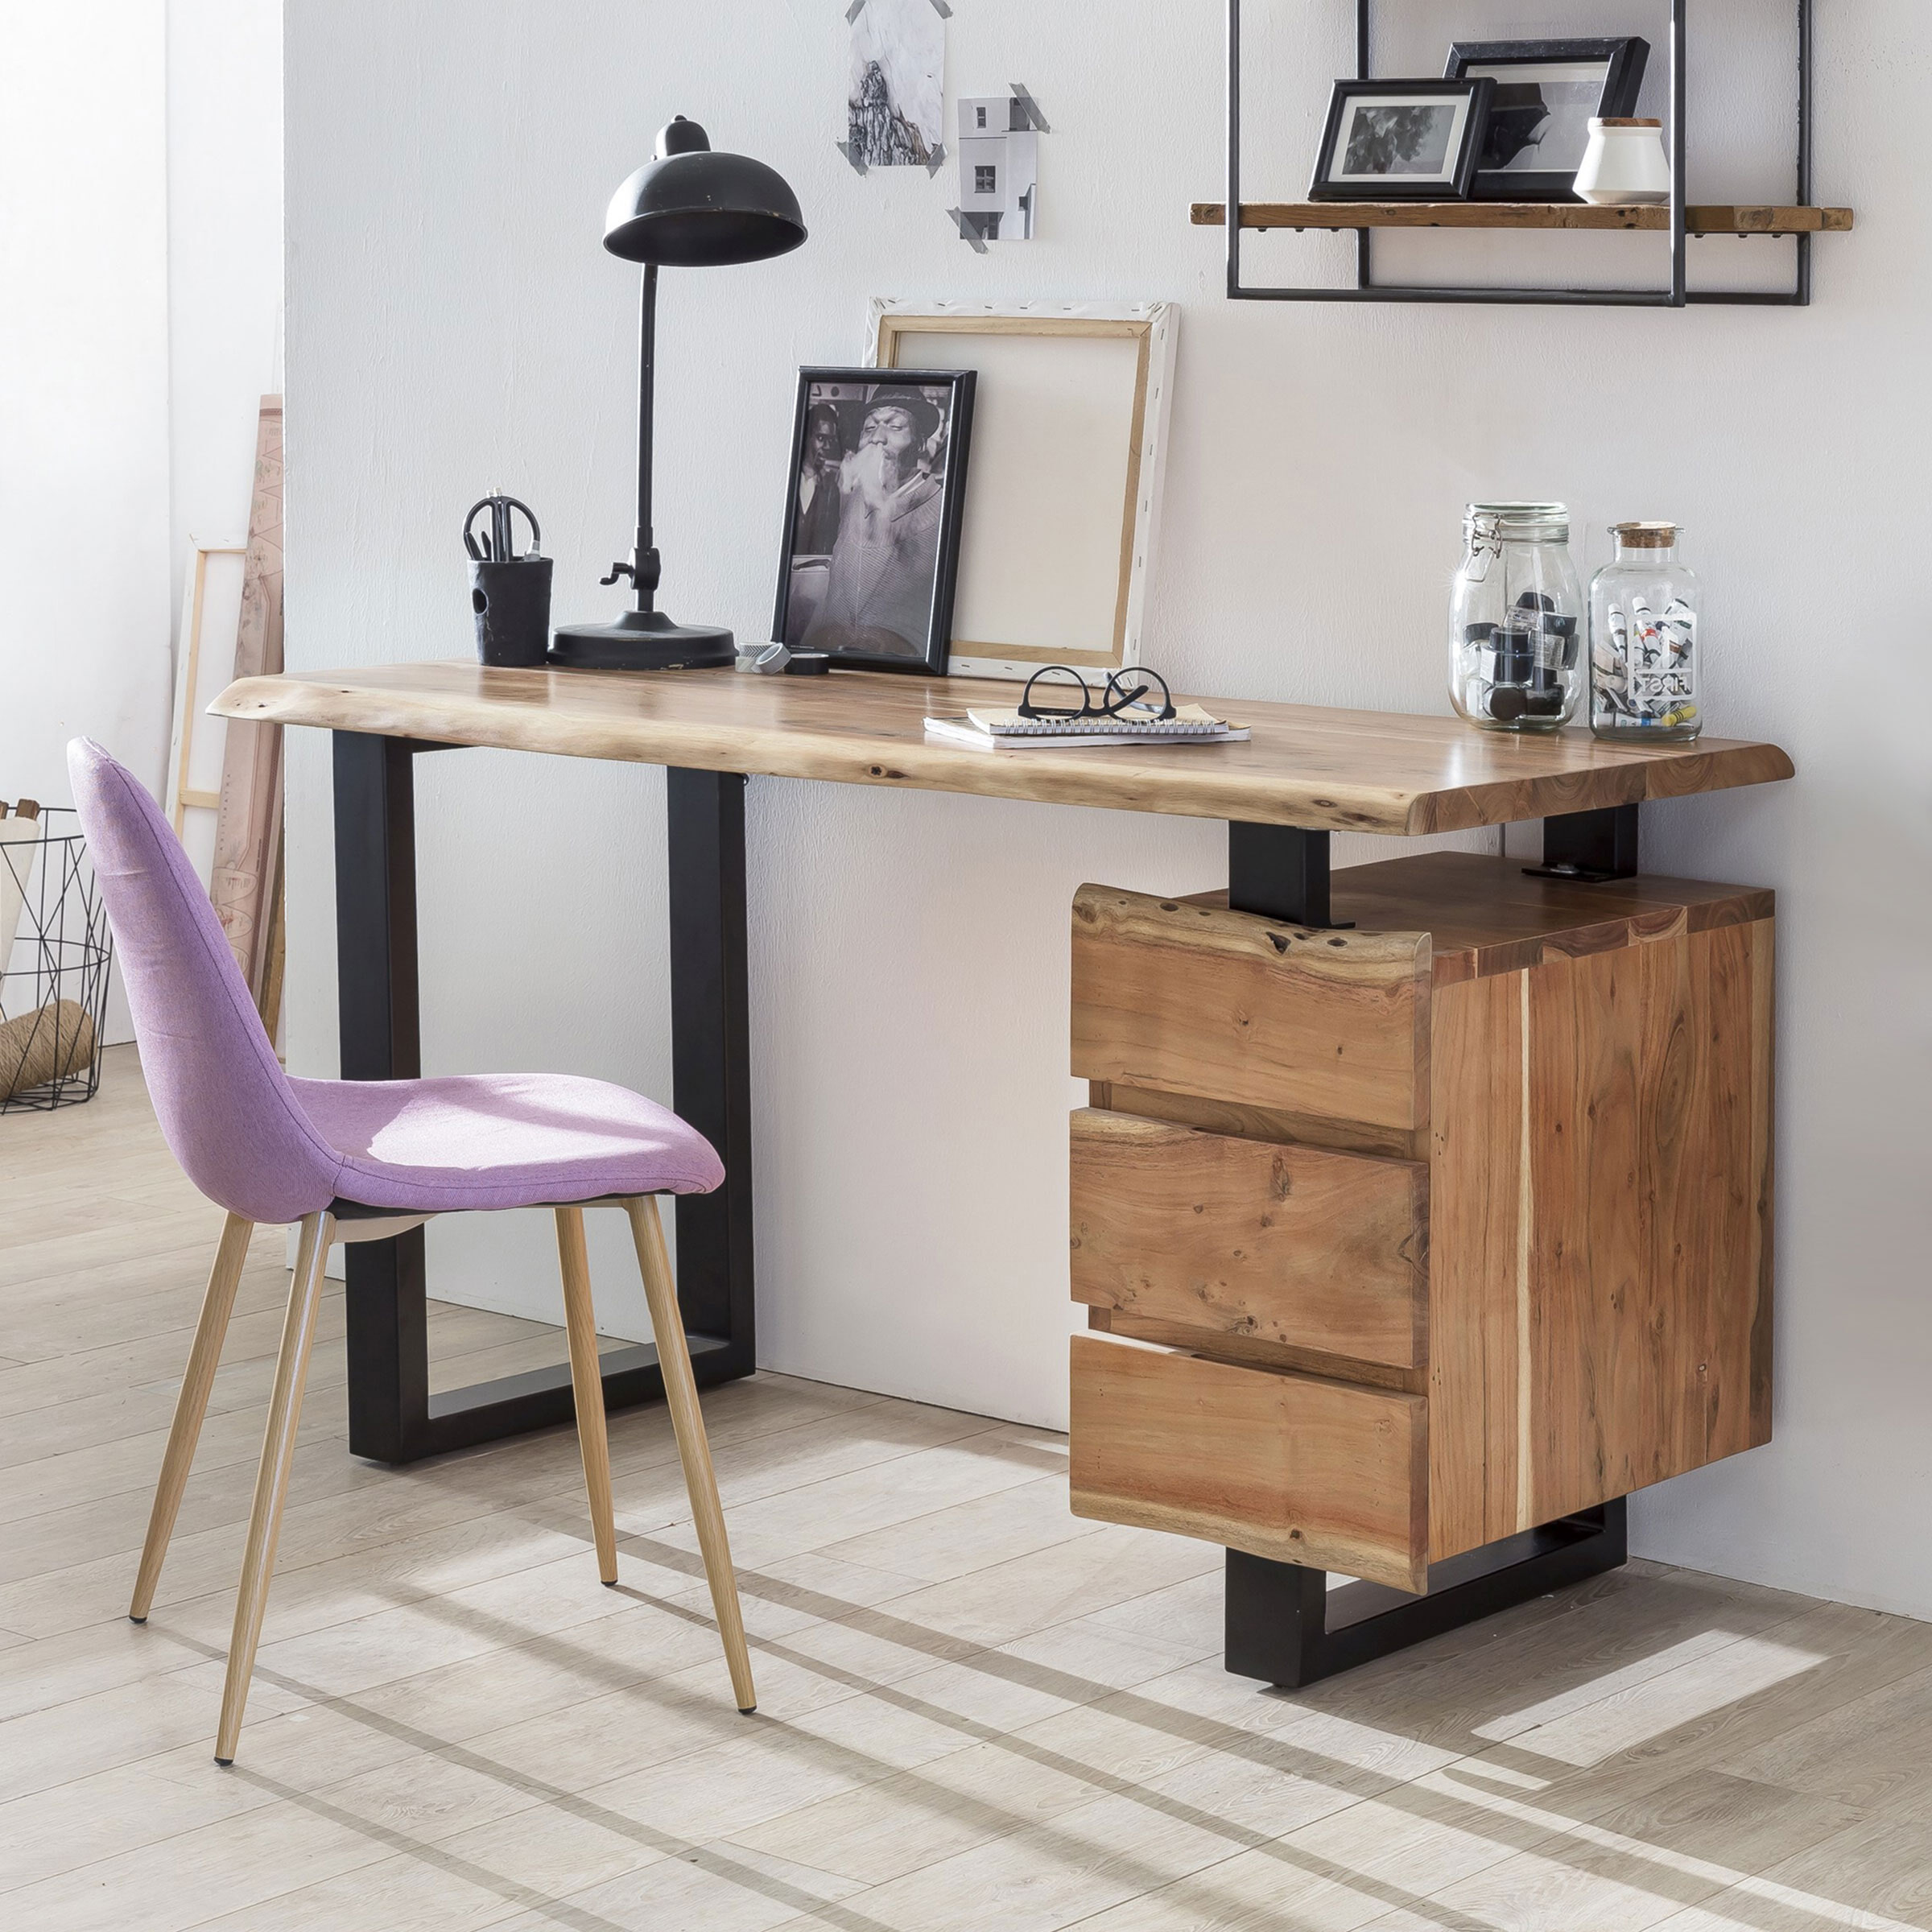 Op Trapstoel: Alles voor de inrichtng van uw woning is alles over meubelen te vinden: waaronder meubelpartner en specifiek Artistiq Bureau Albero 147cm (Artistiq-Bureau-Albero-147cm32279)